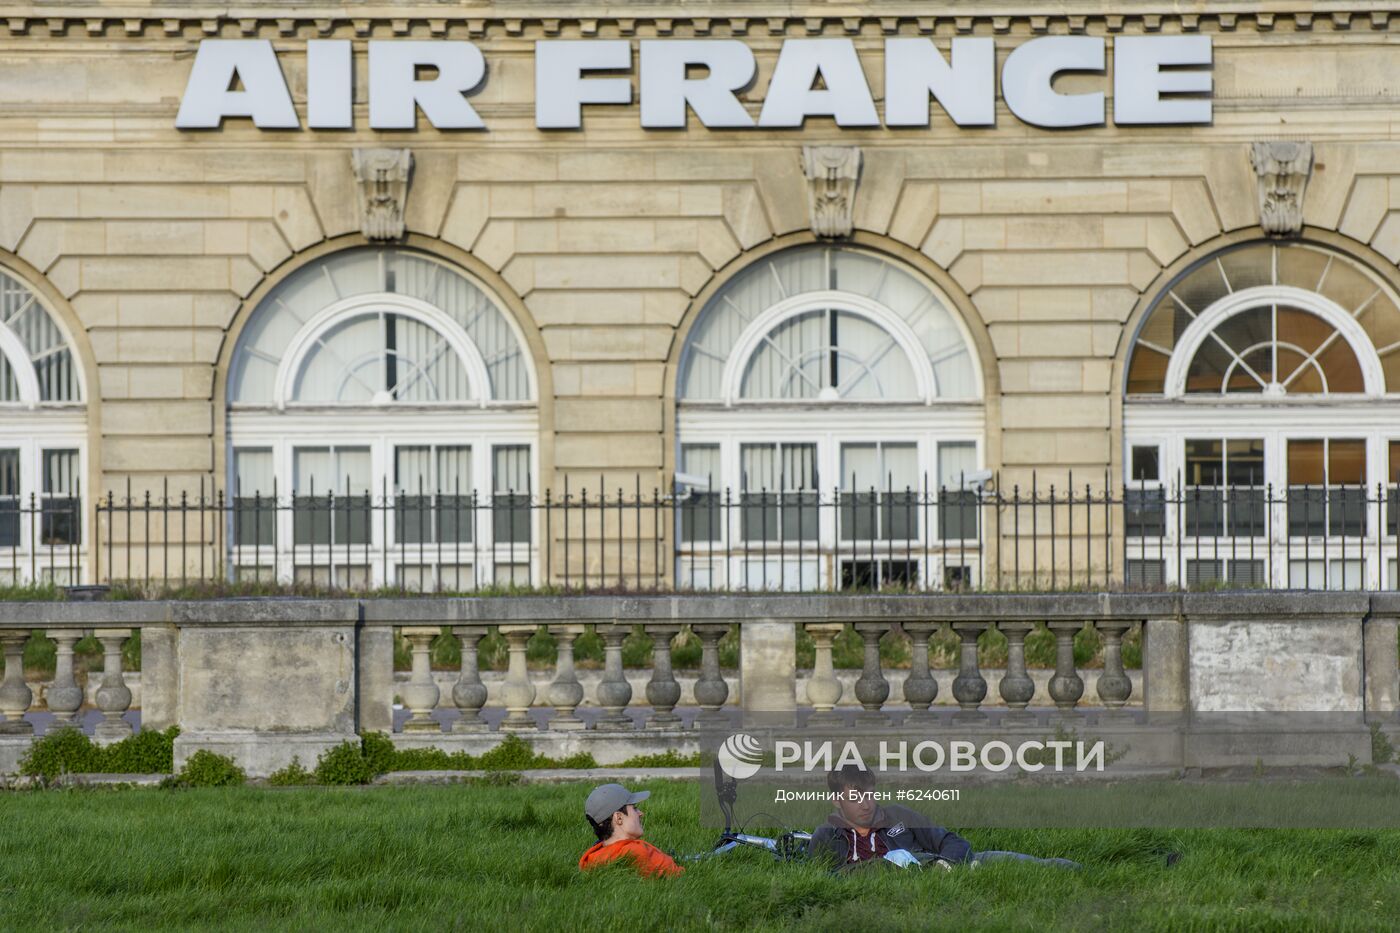 Ослабление карантинного режима во Франции